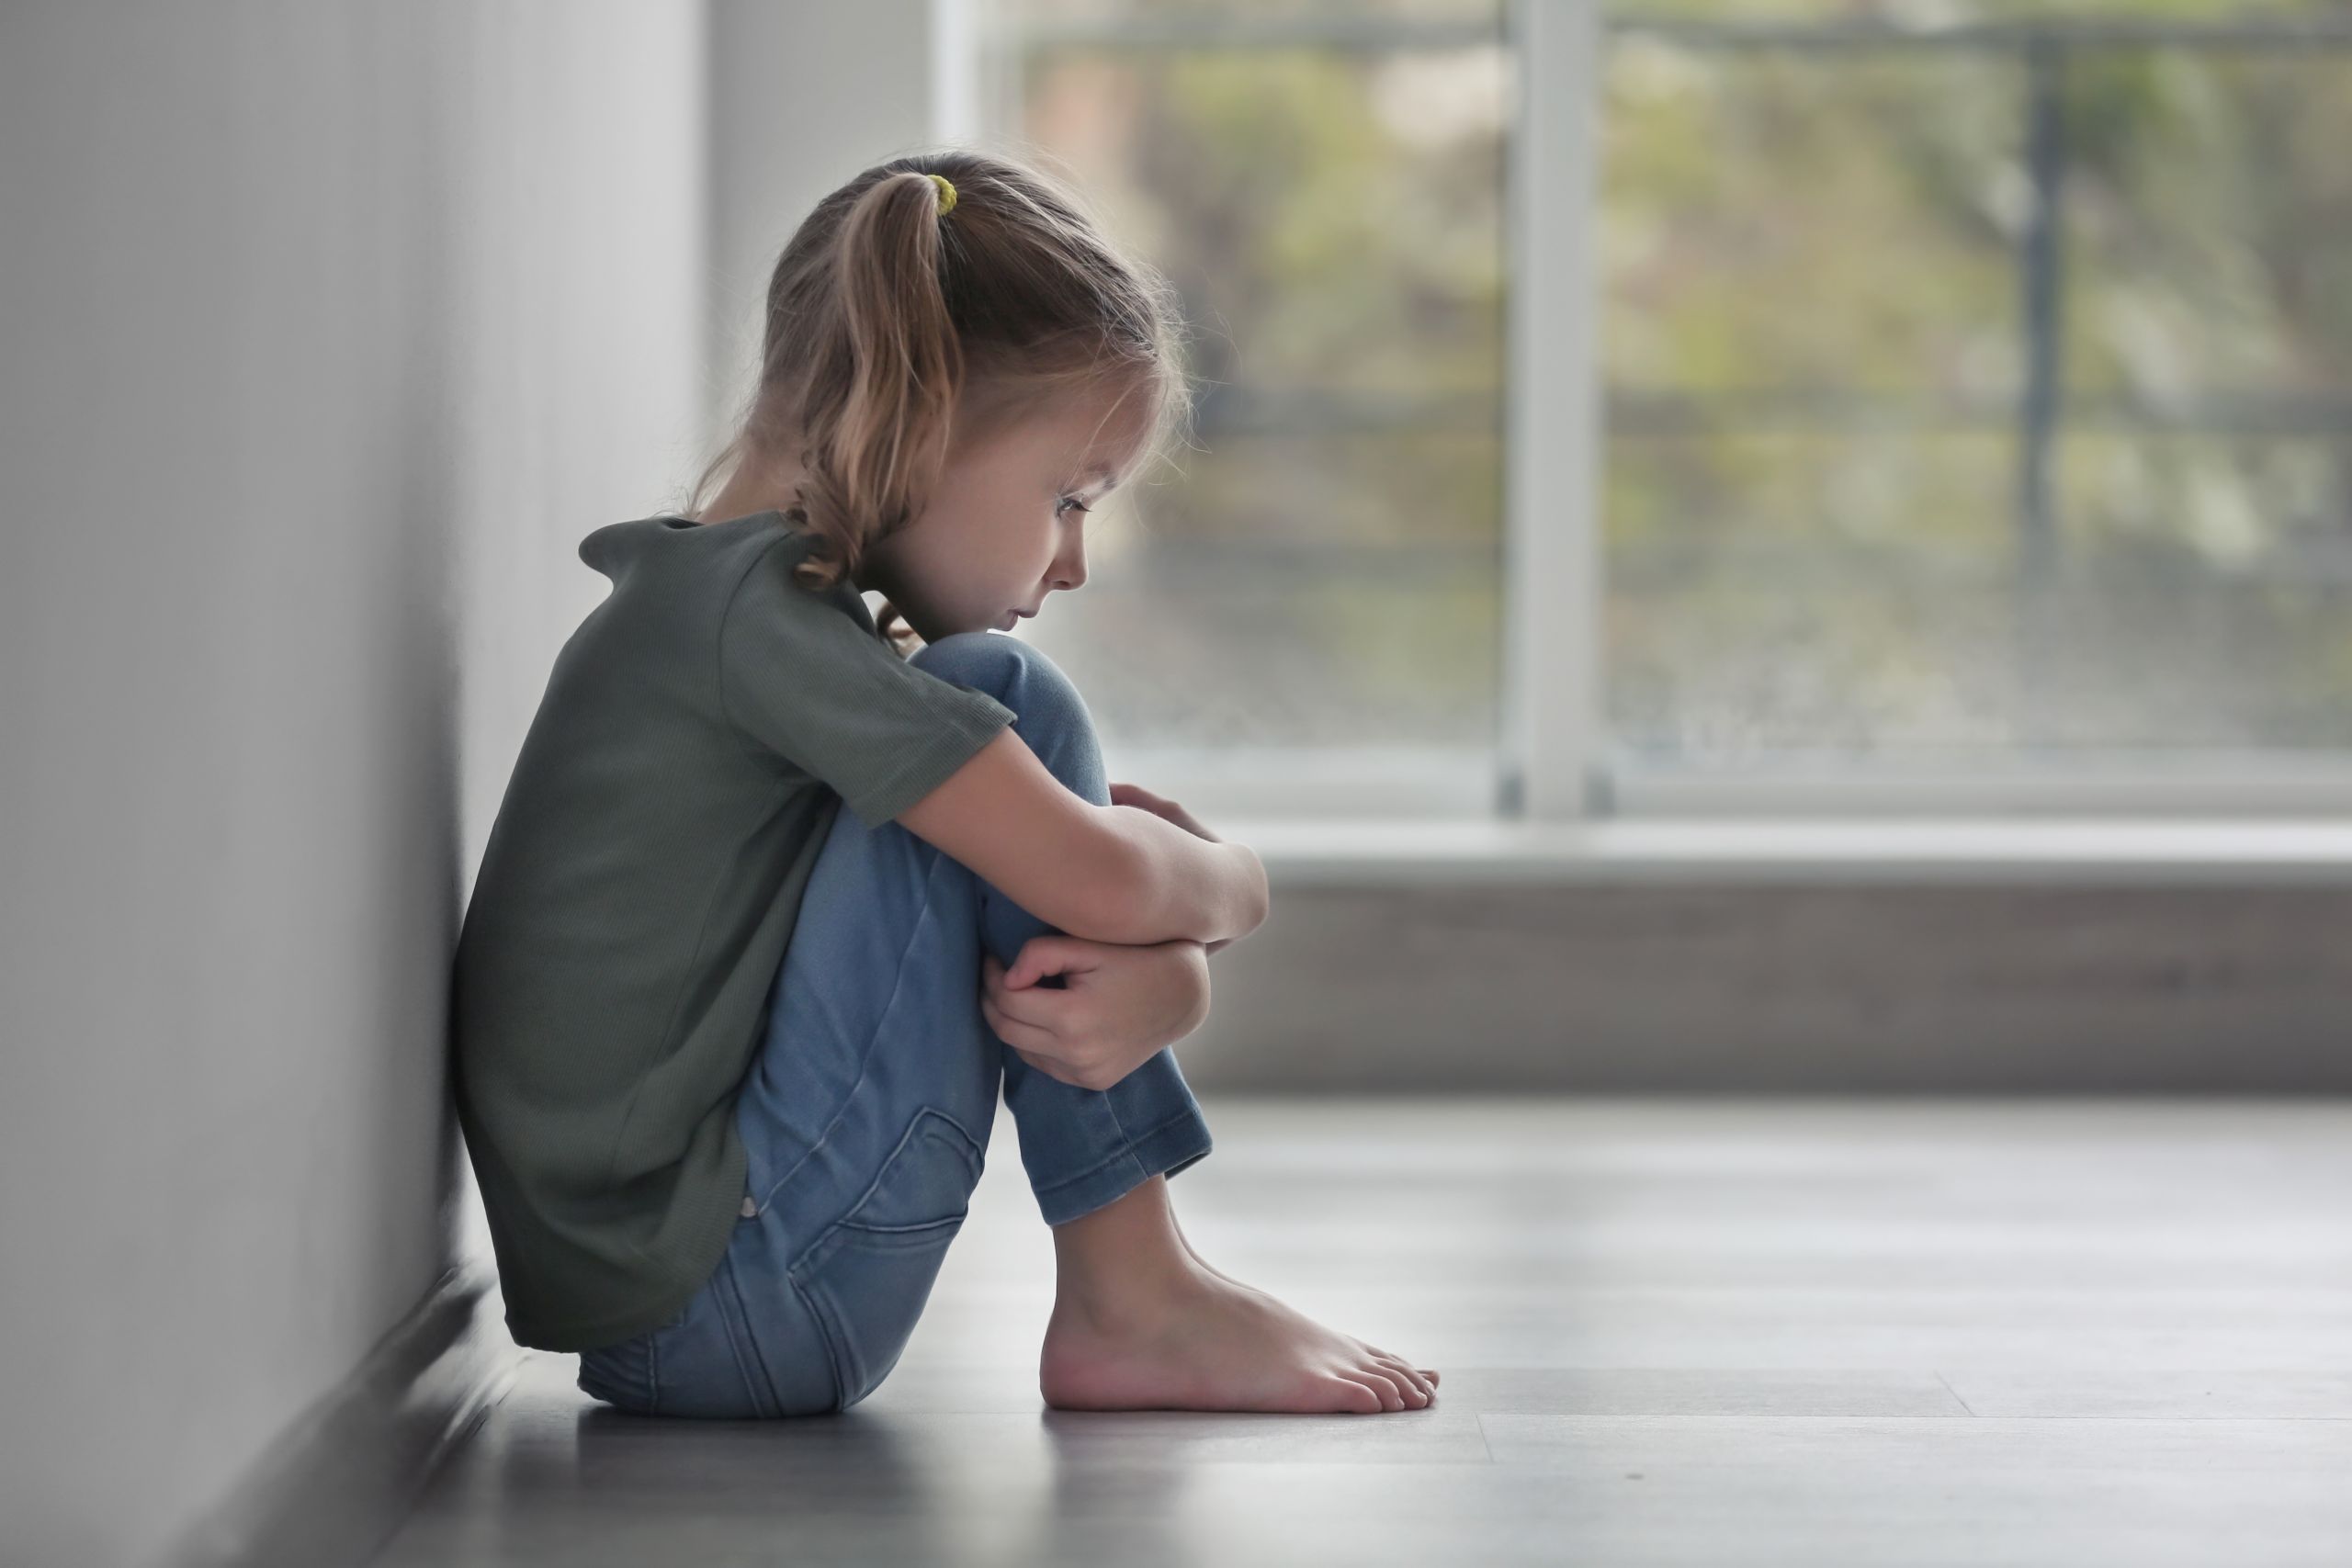 Το άγχος στην παιδική ηλικία επηρεάζει τον εγκέφαλο περισσότερο από έναν τραυματισμό στο κεφάλι έδειξε νέα έρευνα